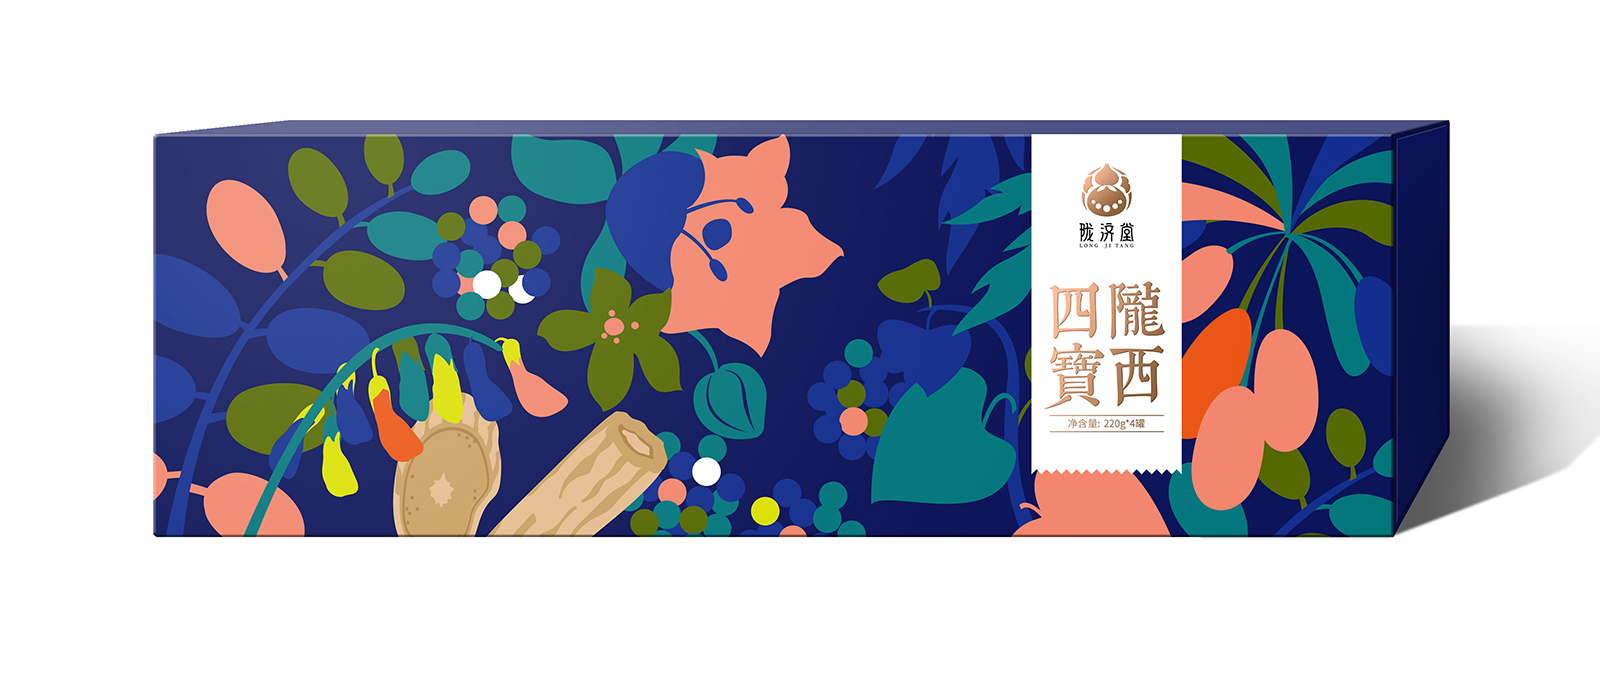 陇济堂中药大健康品牌包装设计 X 张晓宁(图1)